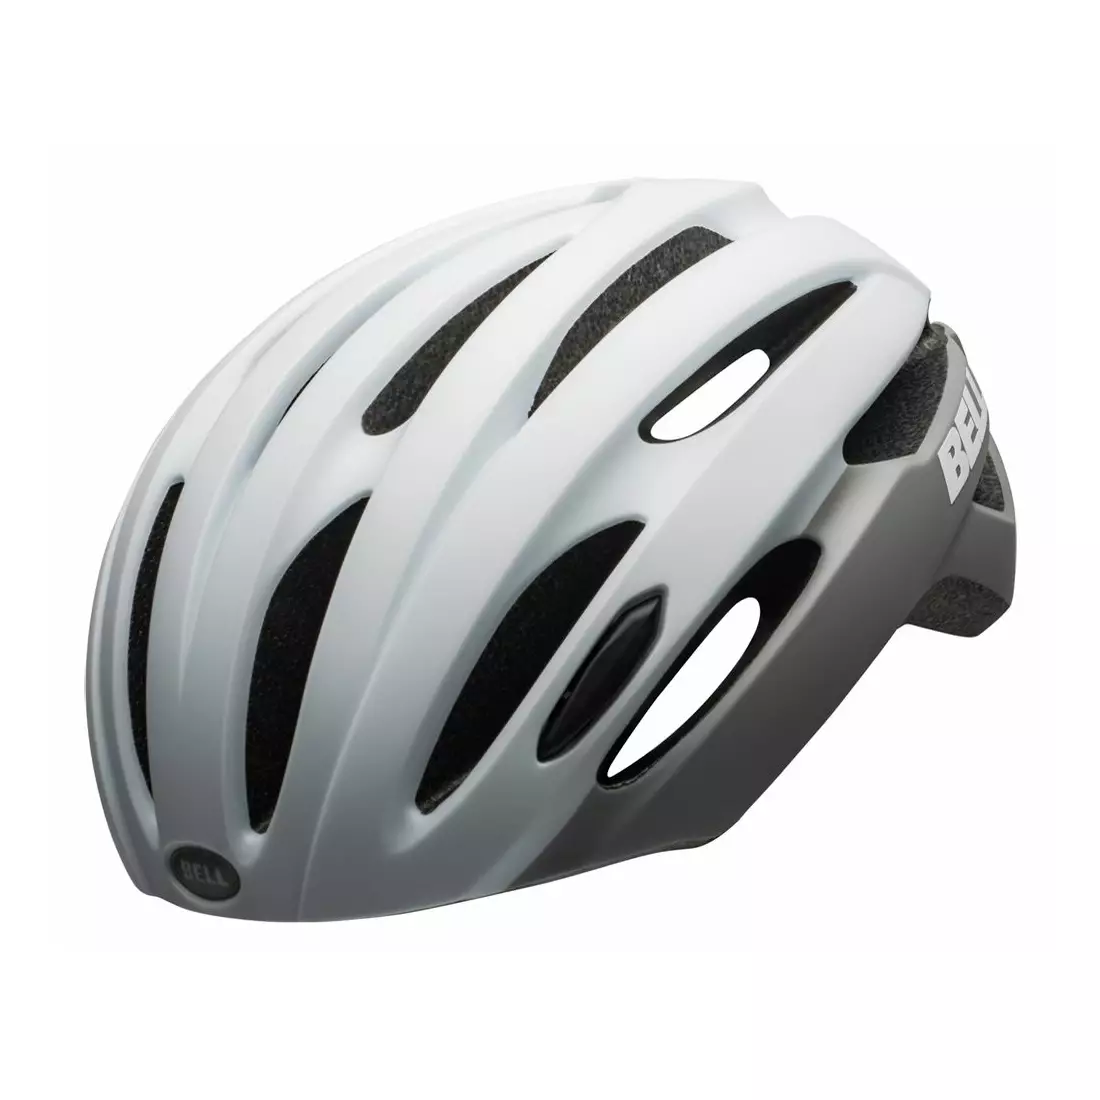 BELL Road bike helmet AVENUE INTEGRATED MIPS matte gloss white gray 